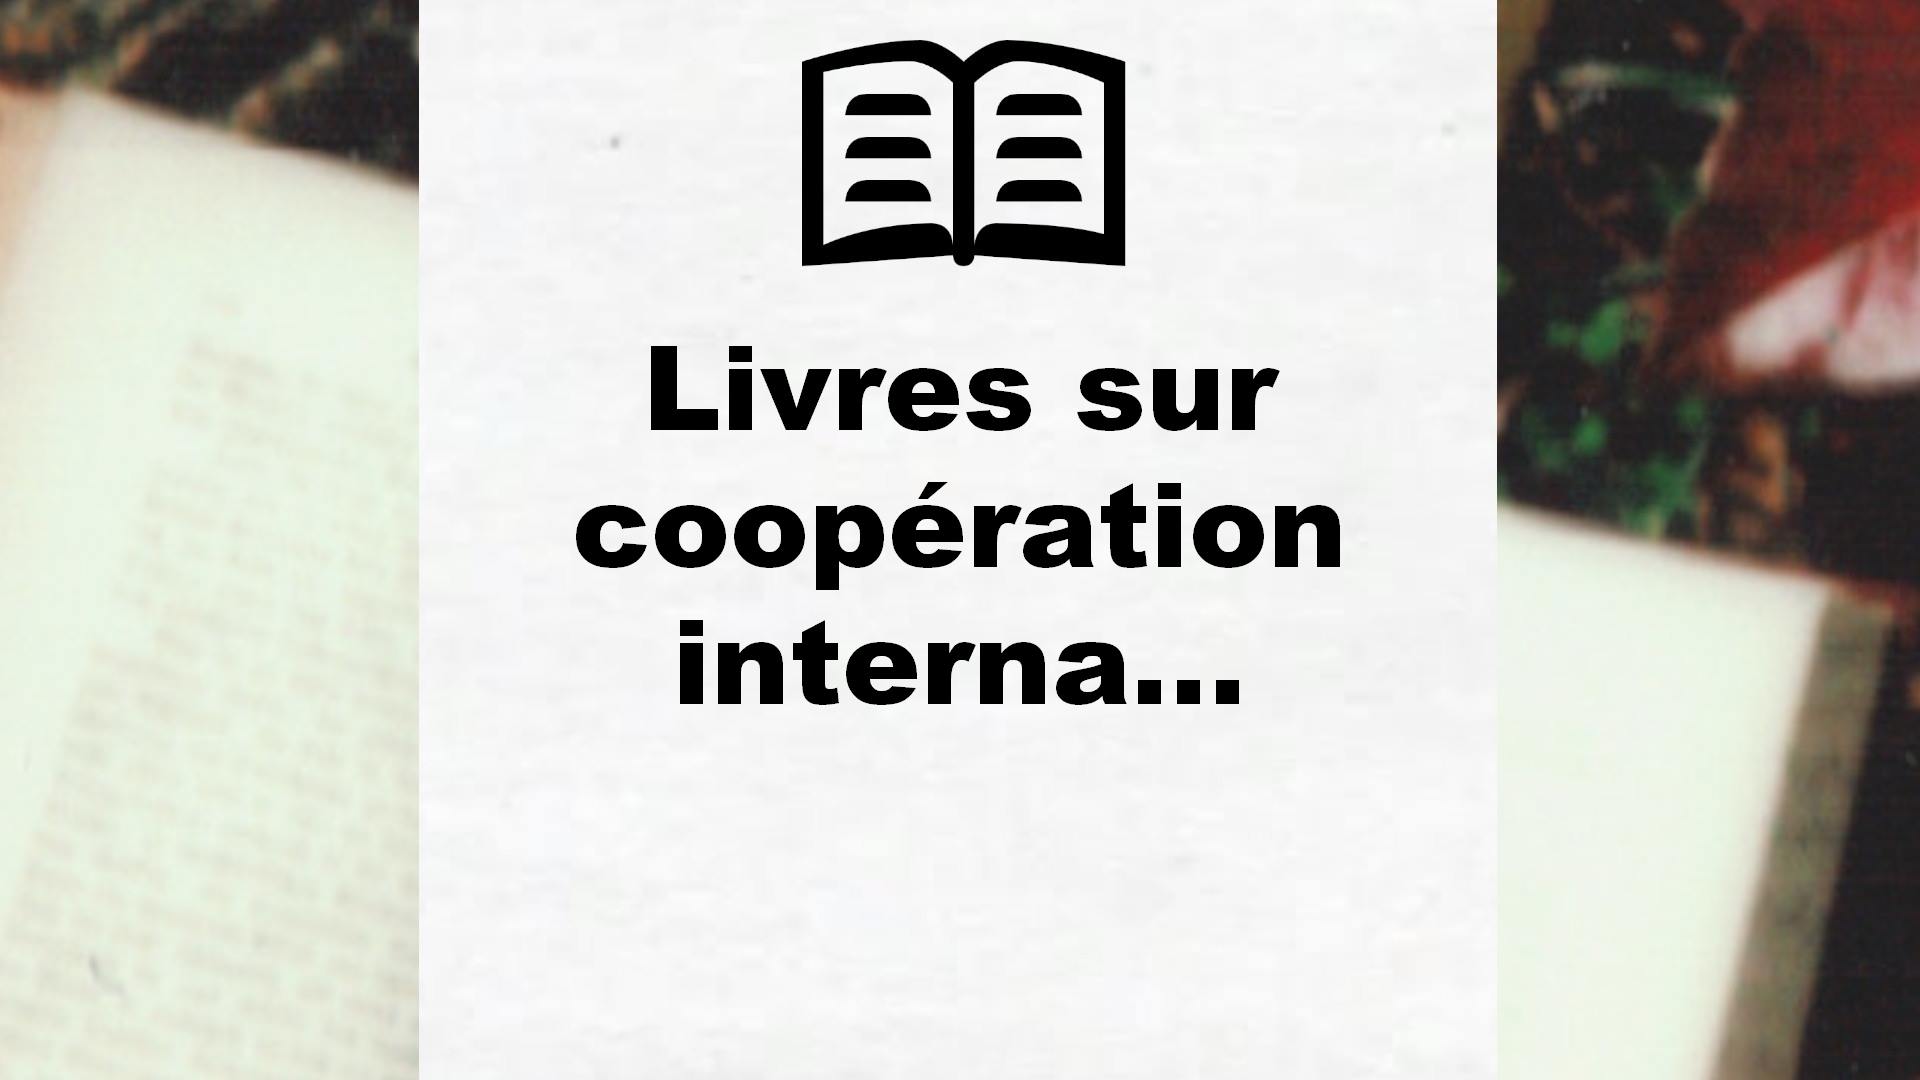 Livres sur coopération internationale